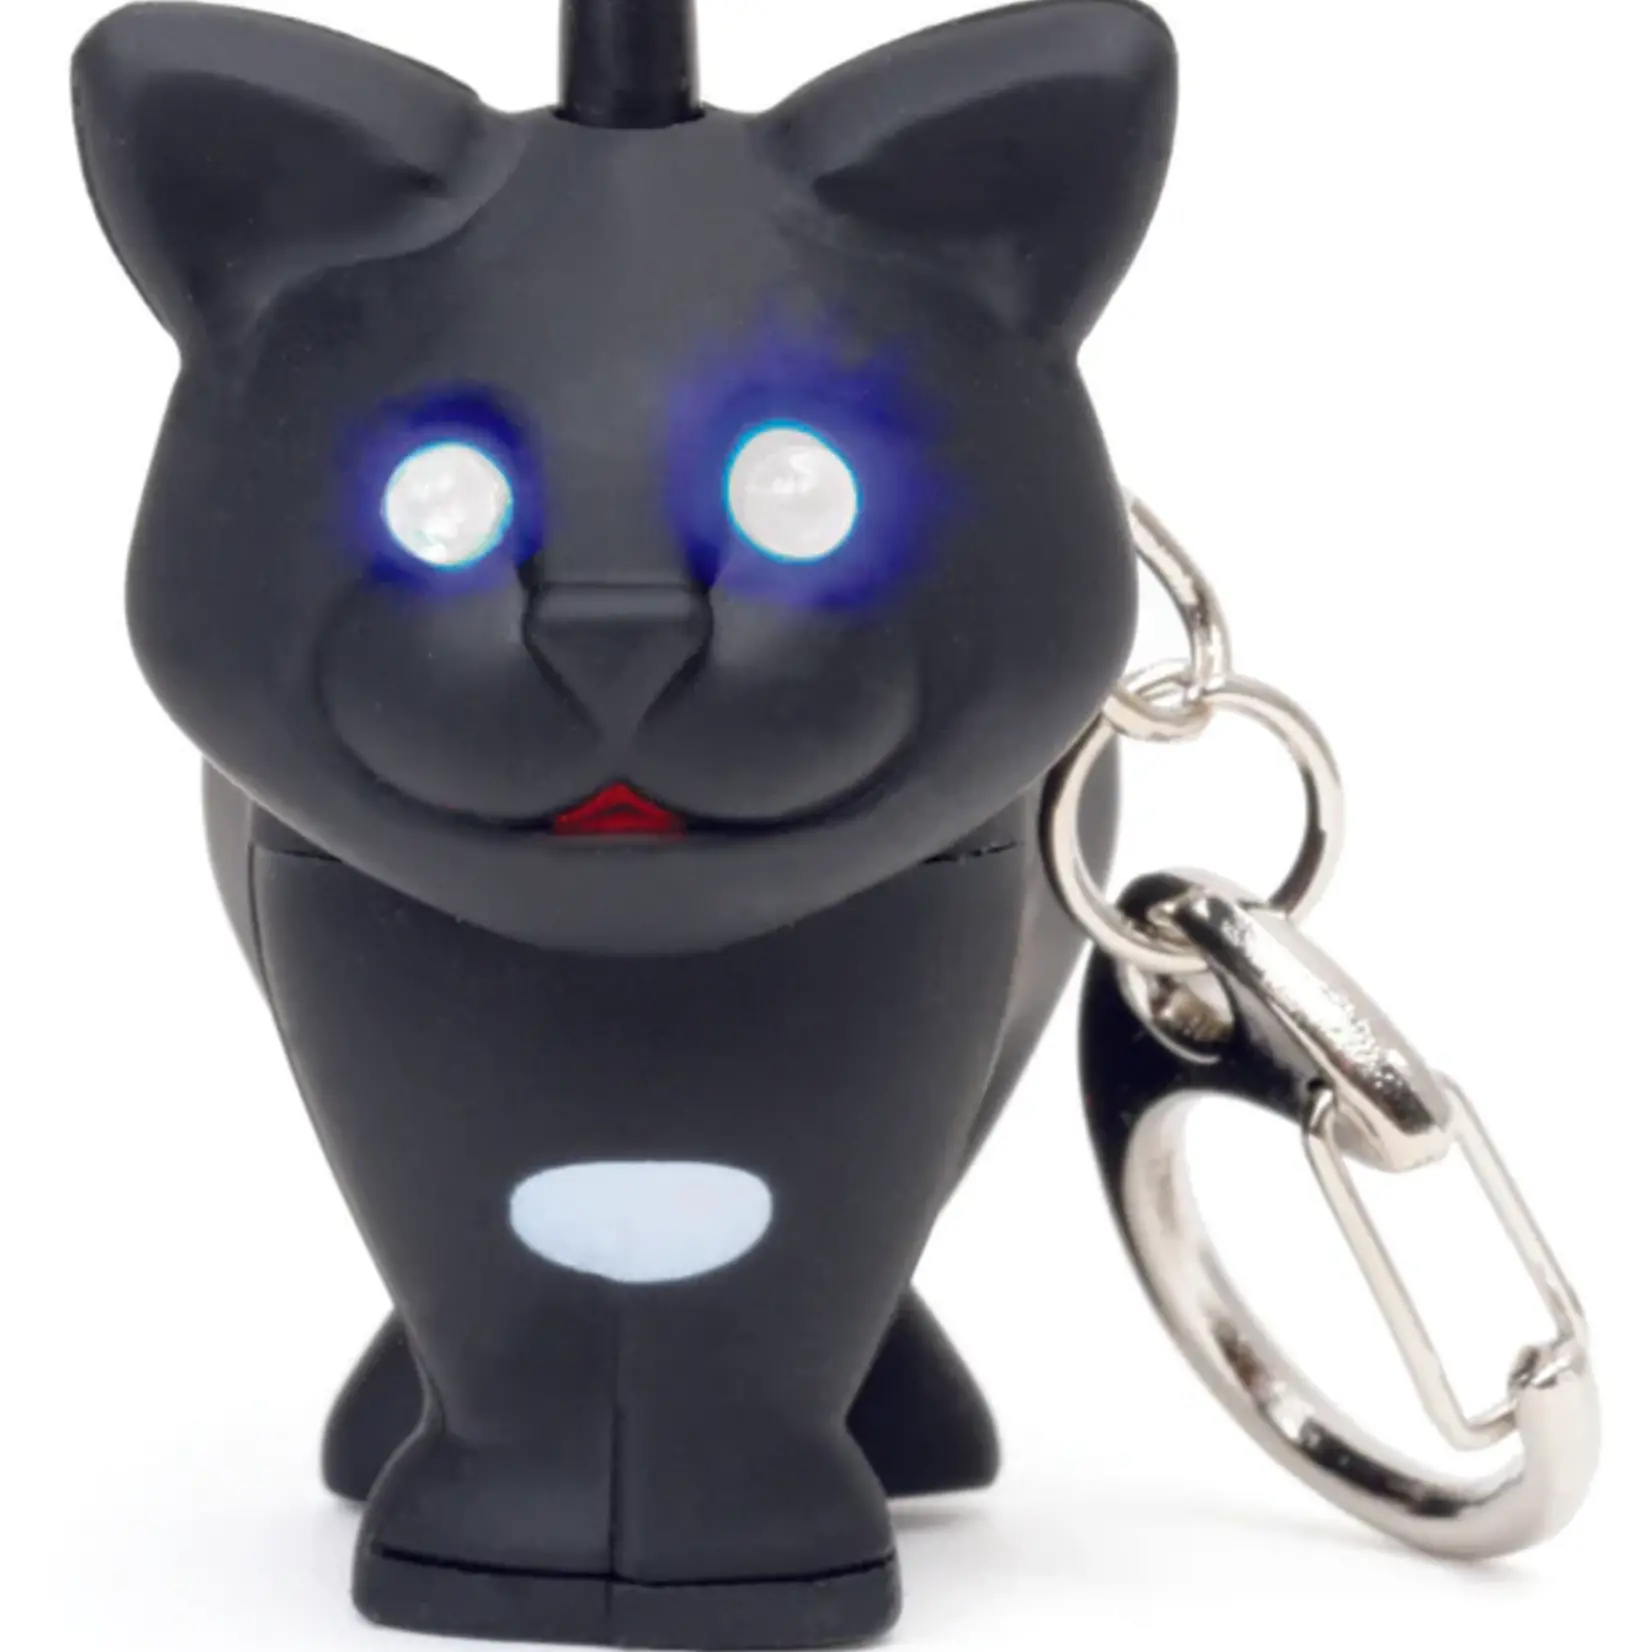 Kikkerkand Cat LED Keyring